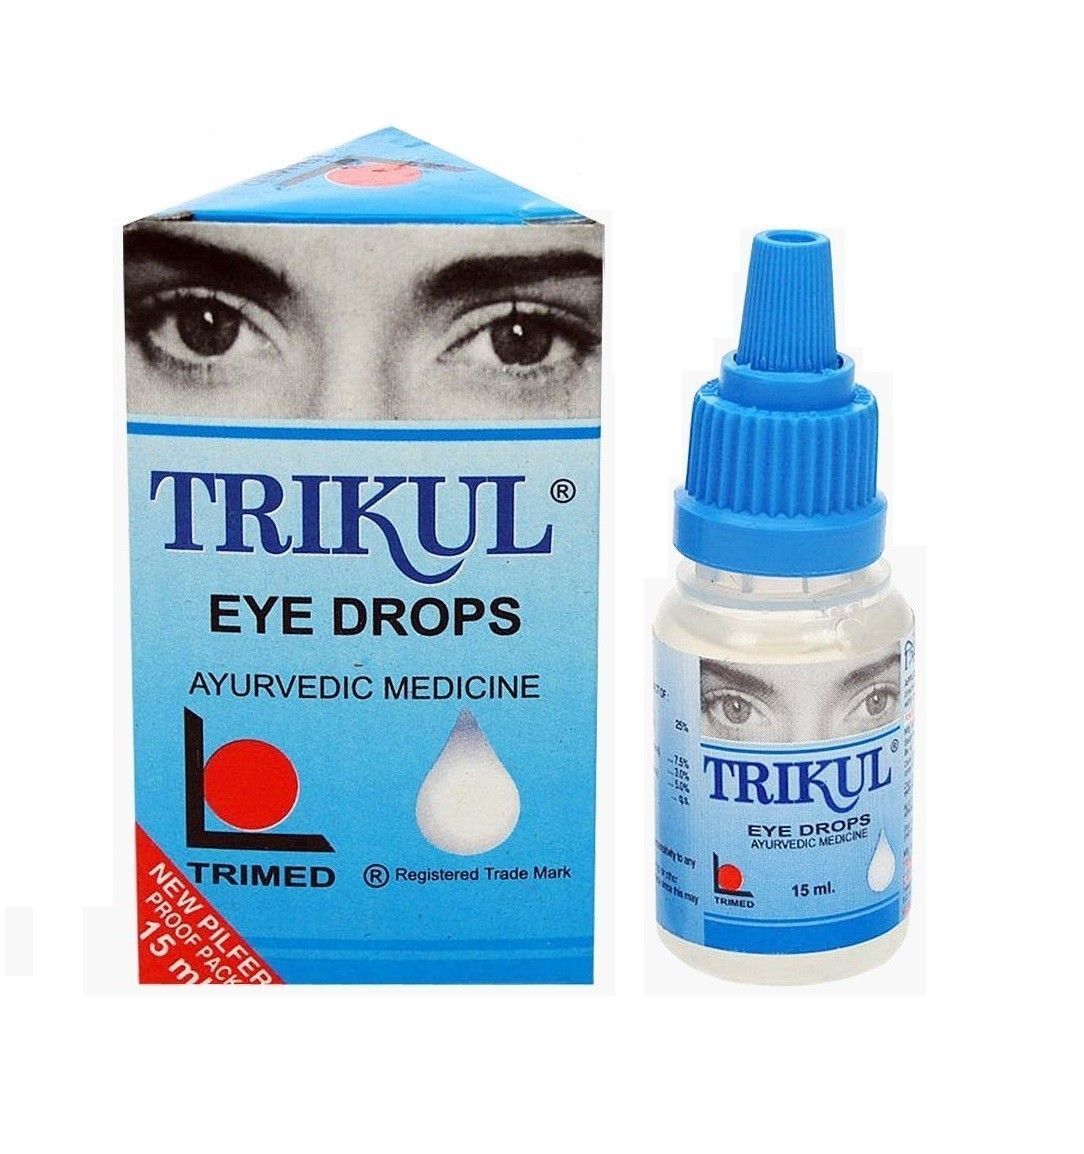 Капли для глаз для улучшения зрения. Трикул глазные капли. (Тримед) трикул Тримед (капли для глаз) trikul Trimed 15 мл.. Капля для глаз. Турецкие капли для глаз.